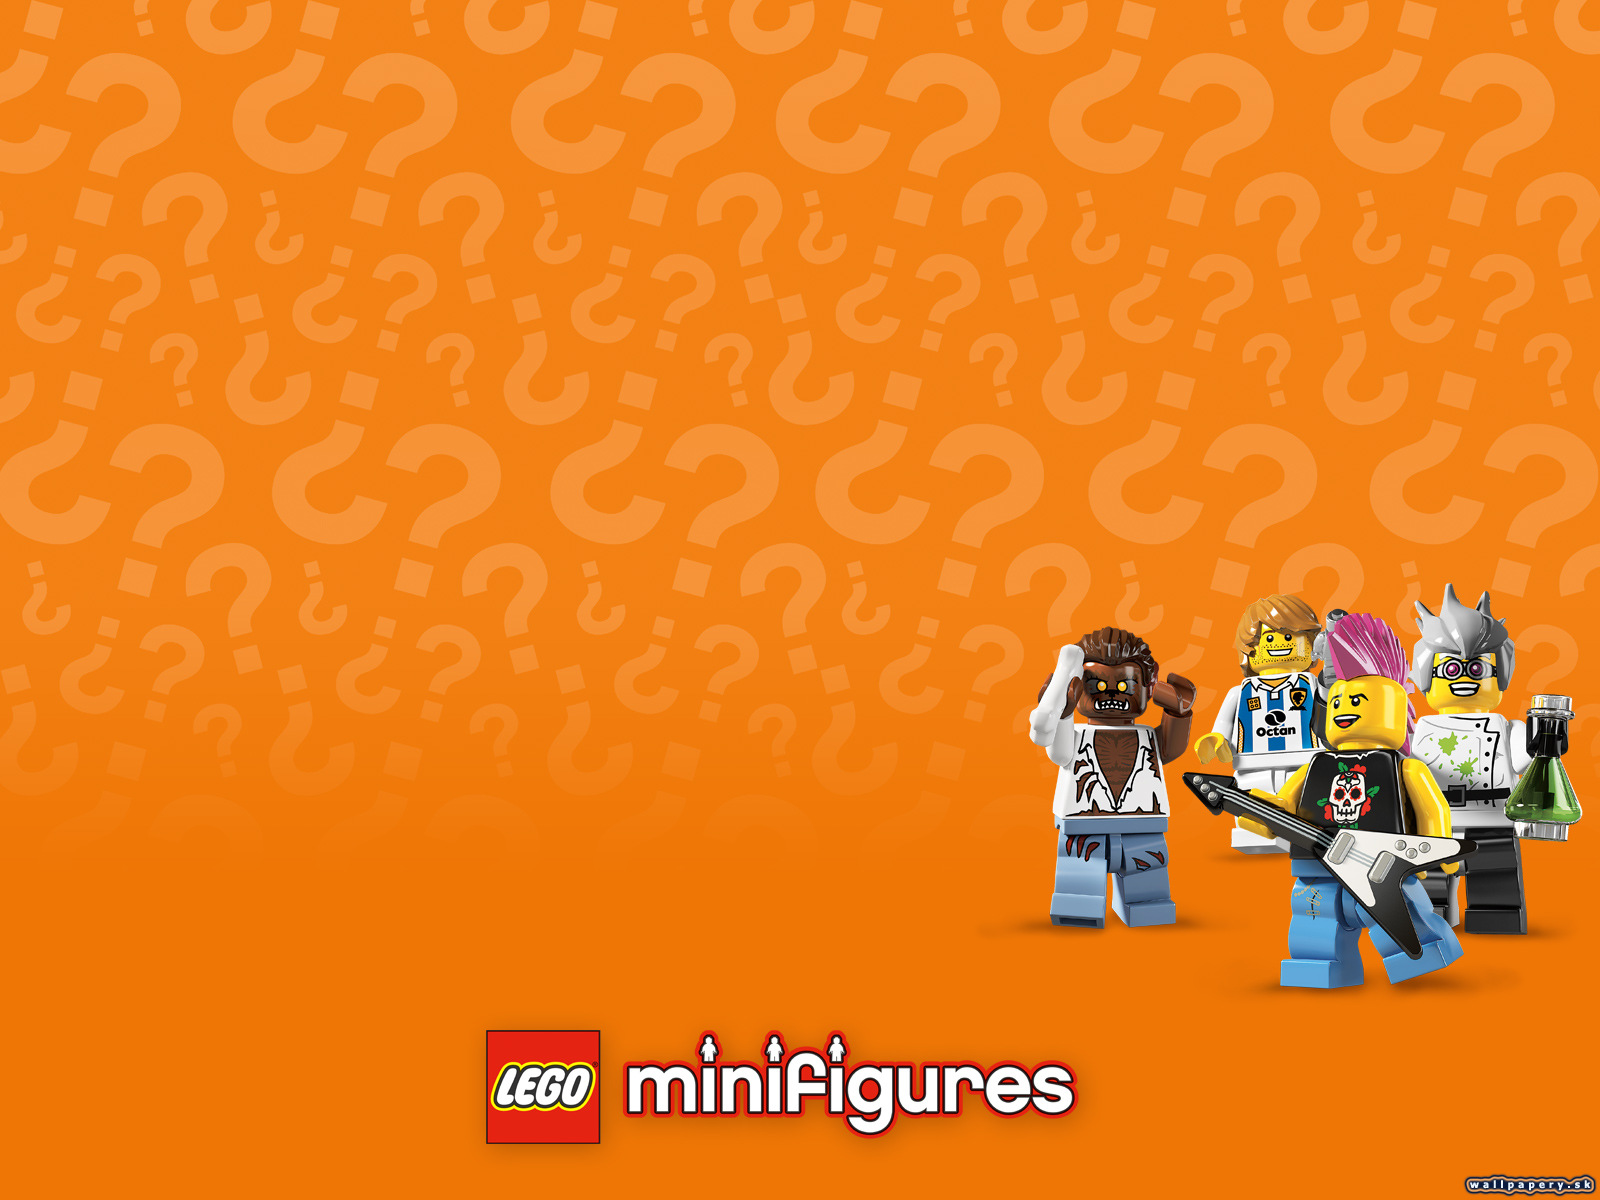 LEGO Minifigures Online - wallpaper 4